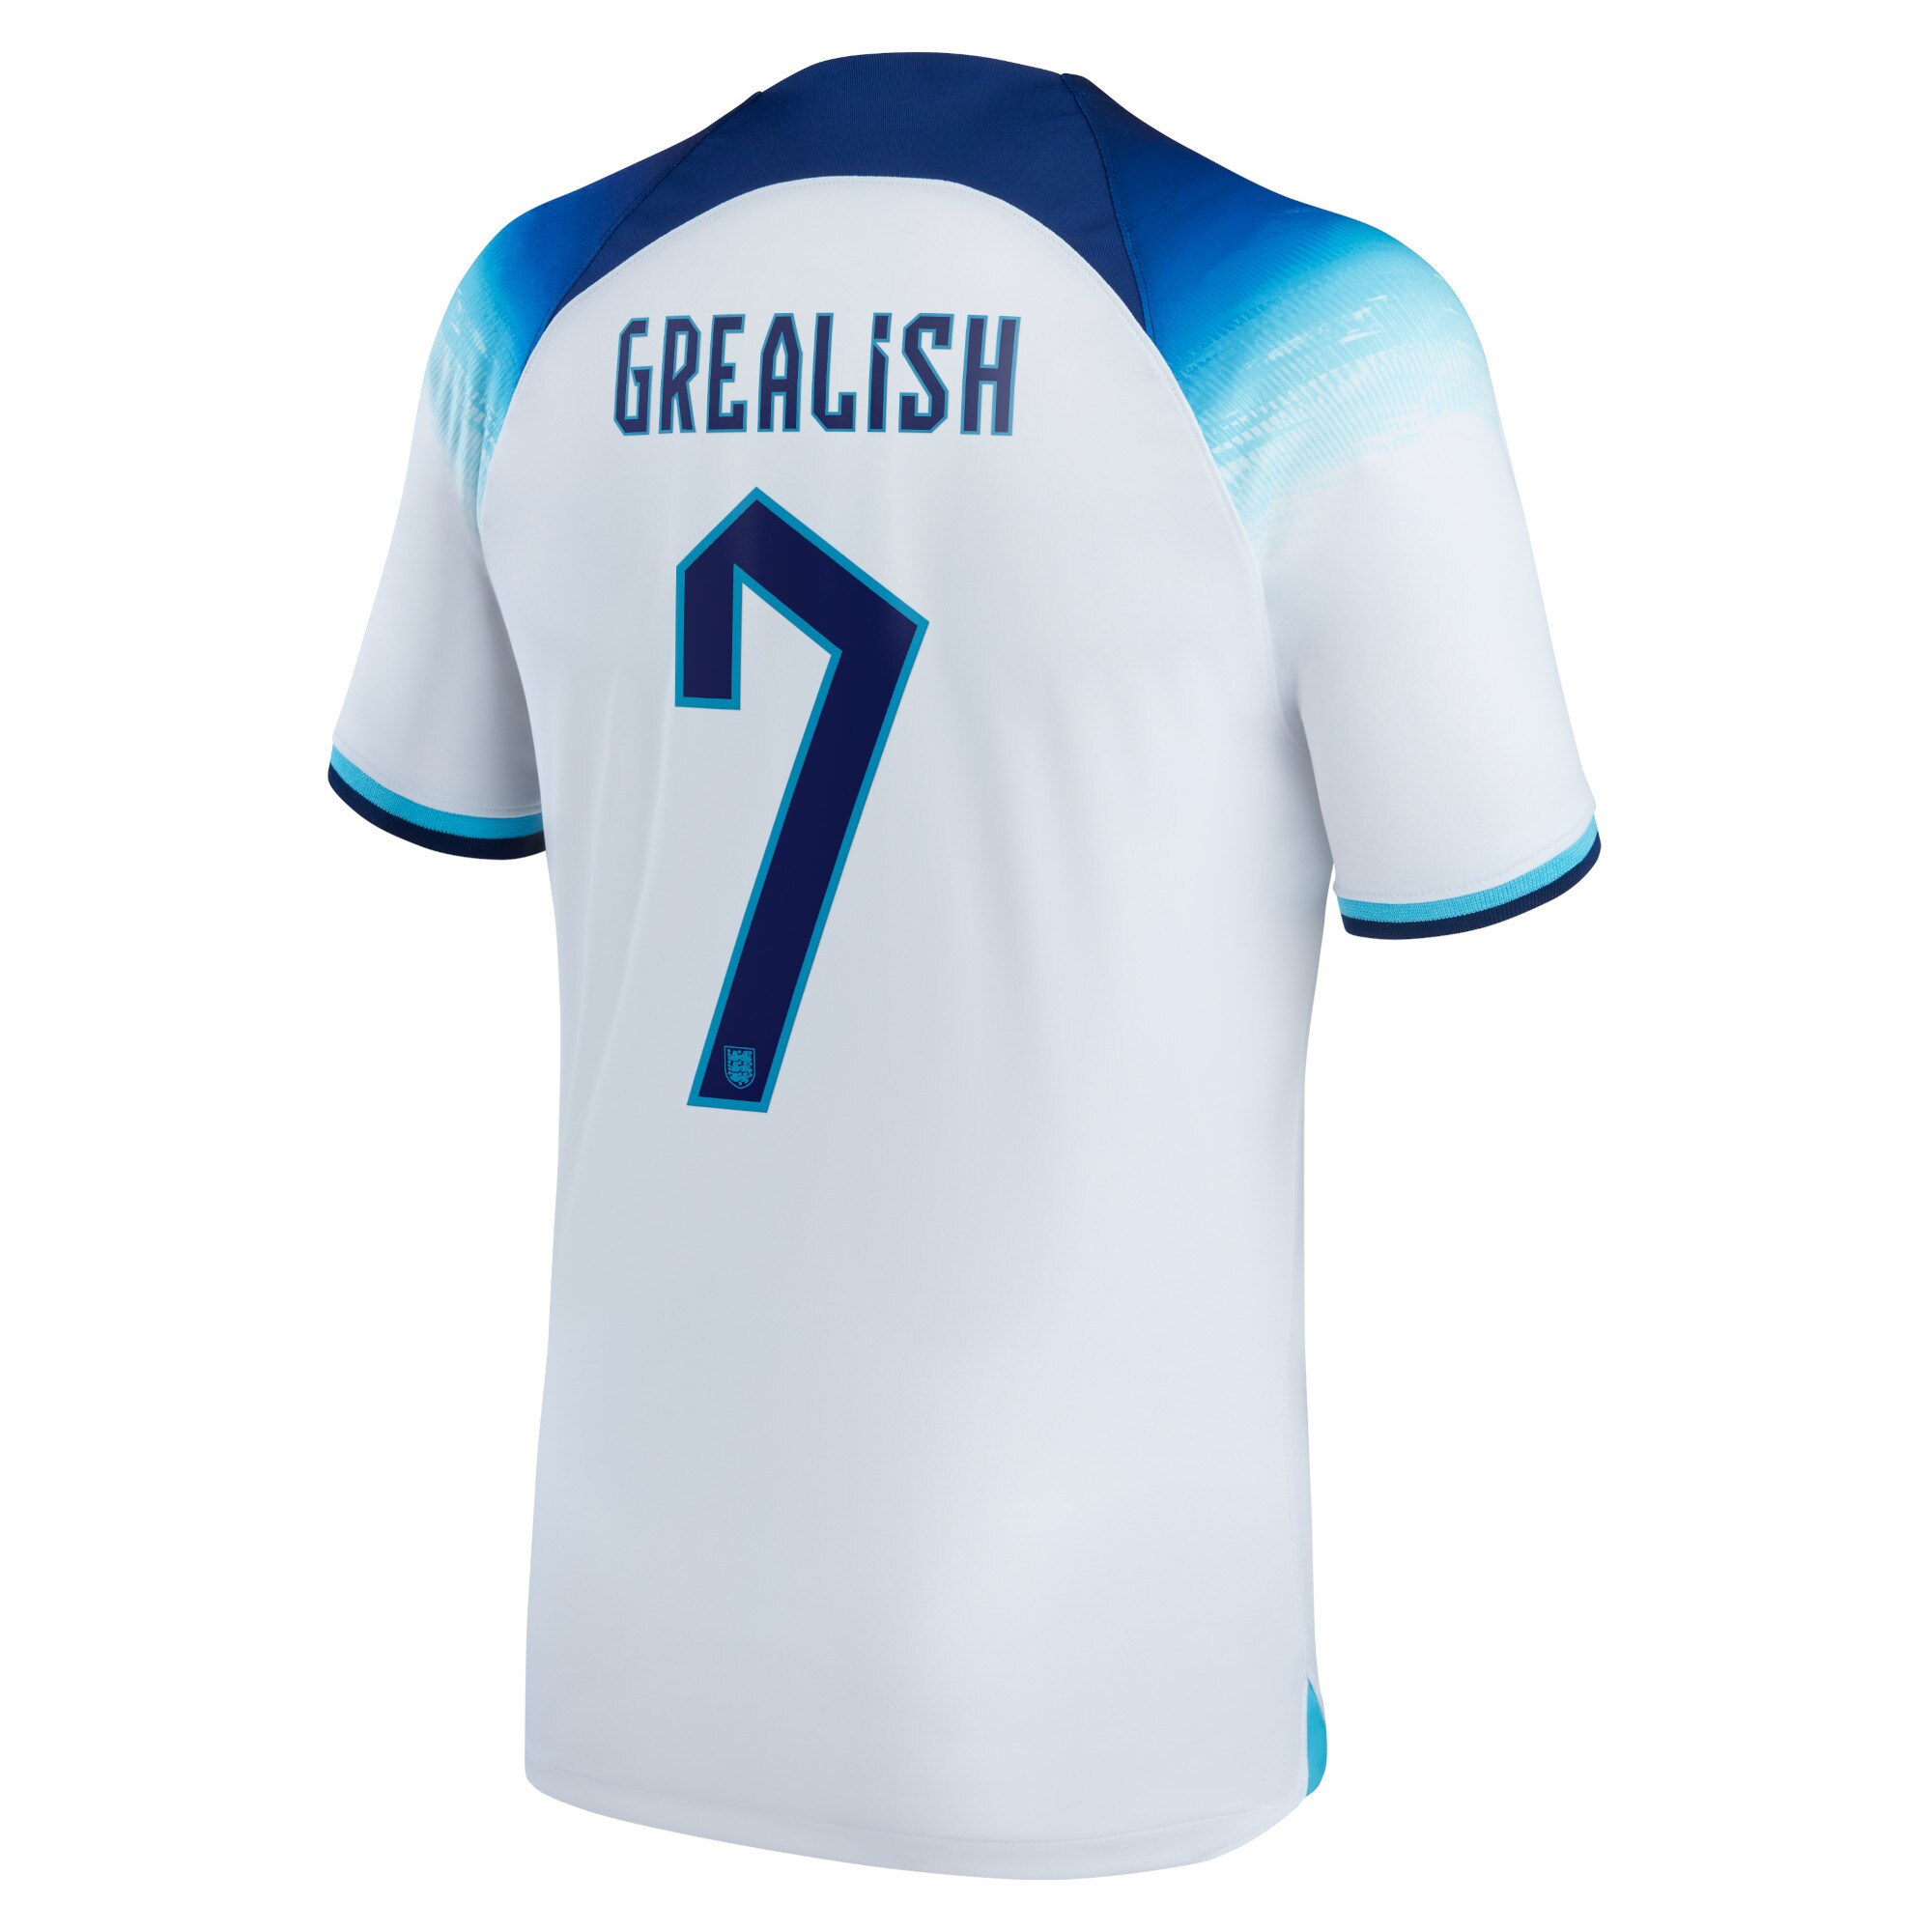 England Home Stadium Shirt 2022 with Grealish 7 printing